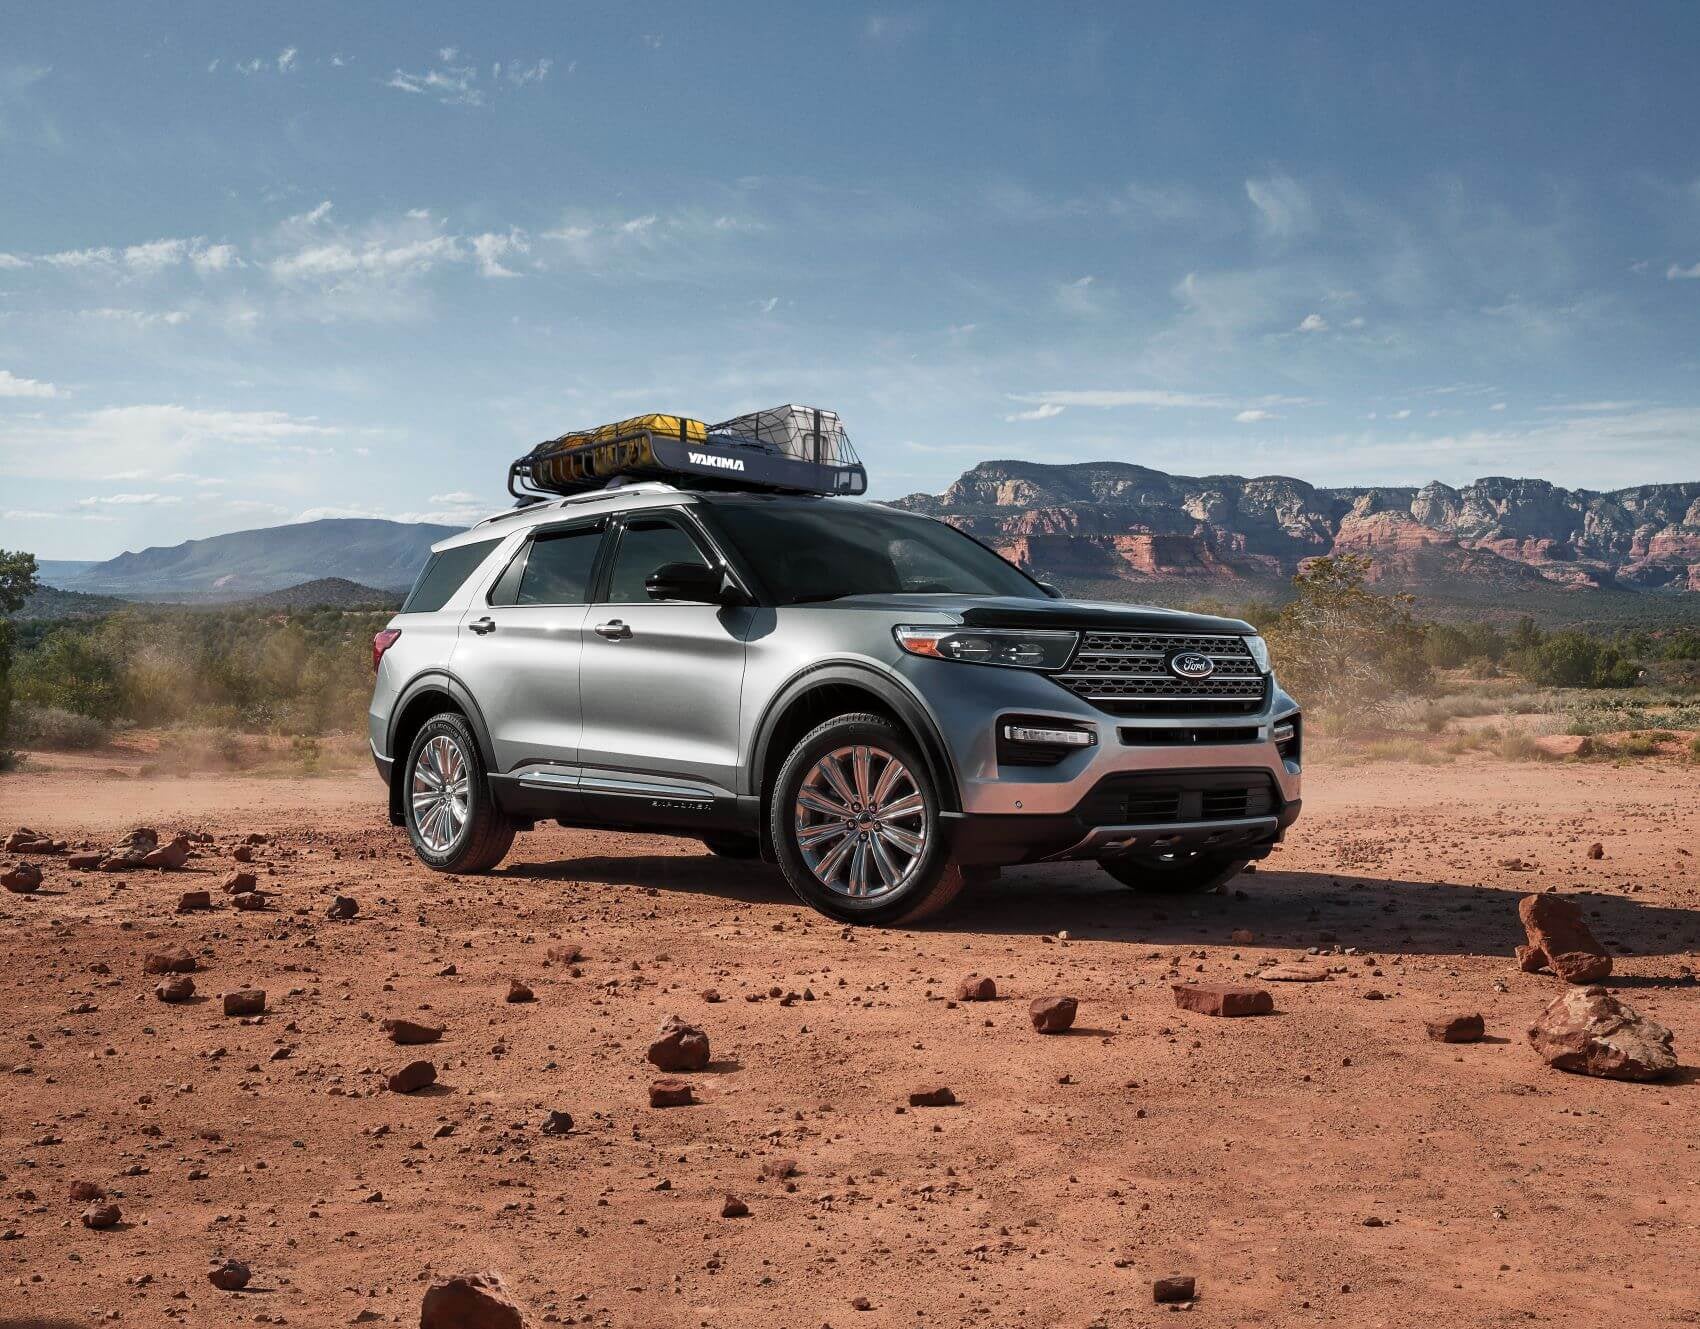 Ford Explorer off-roading in desert